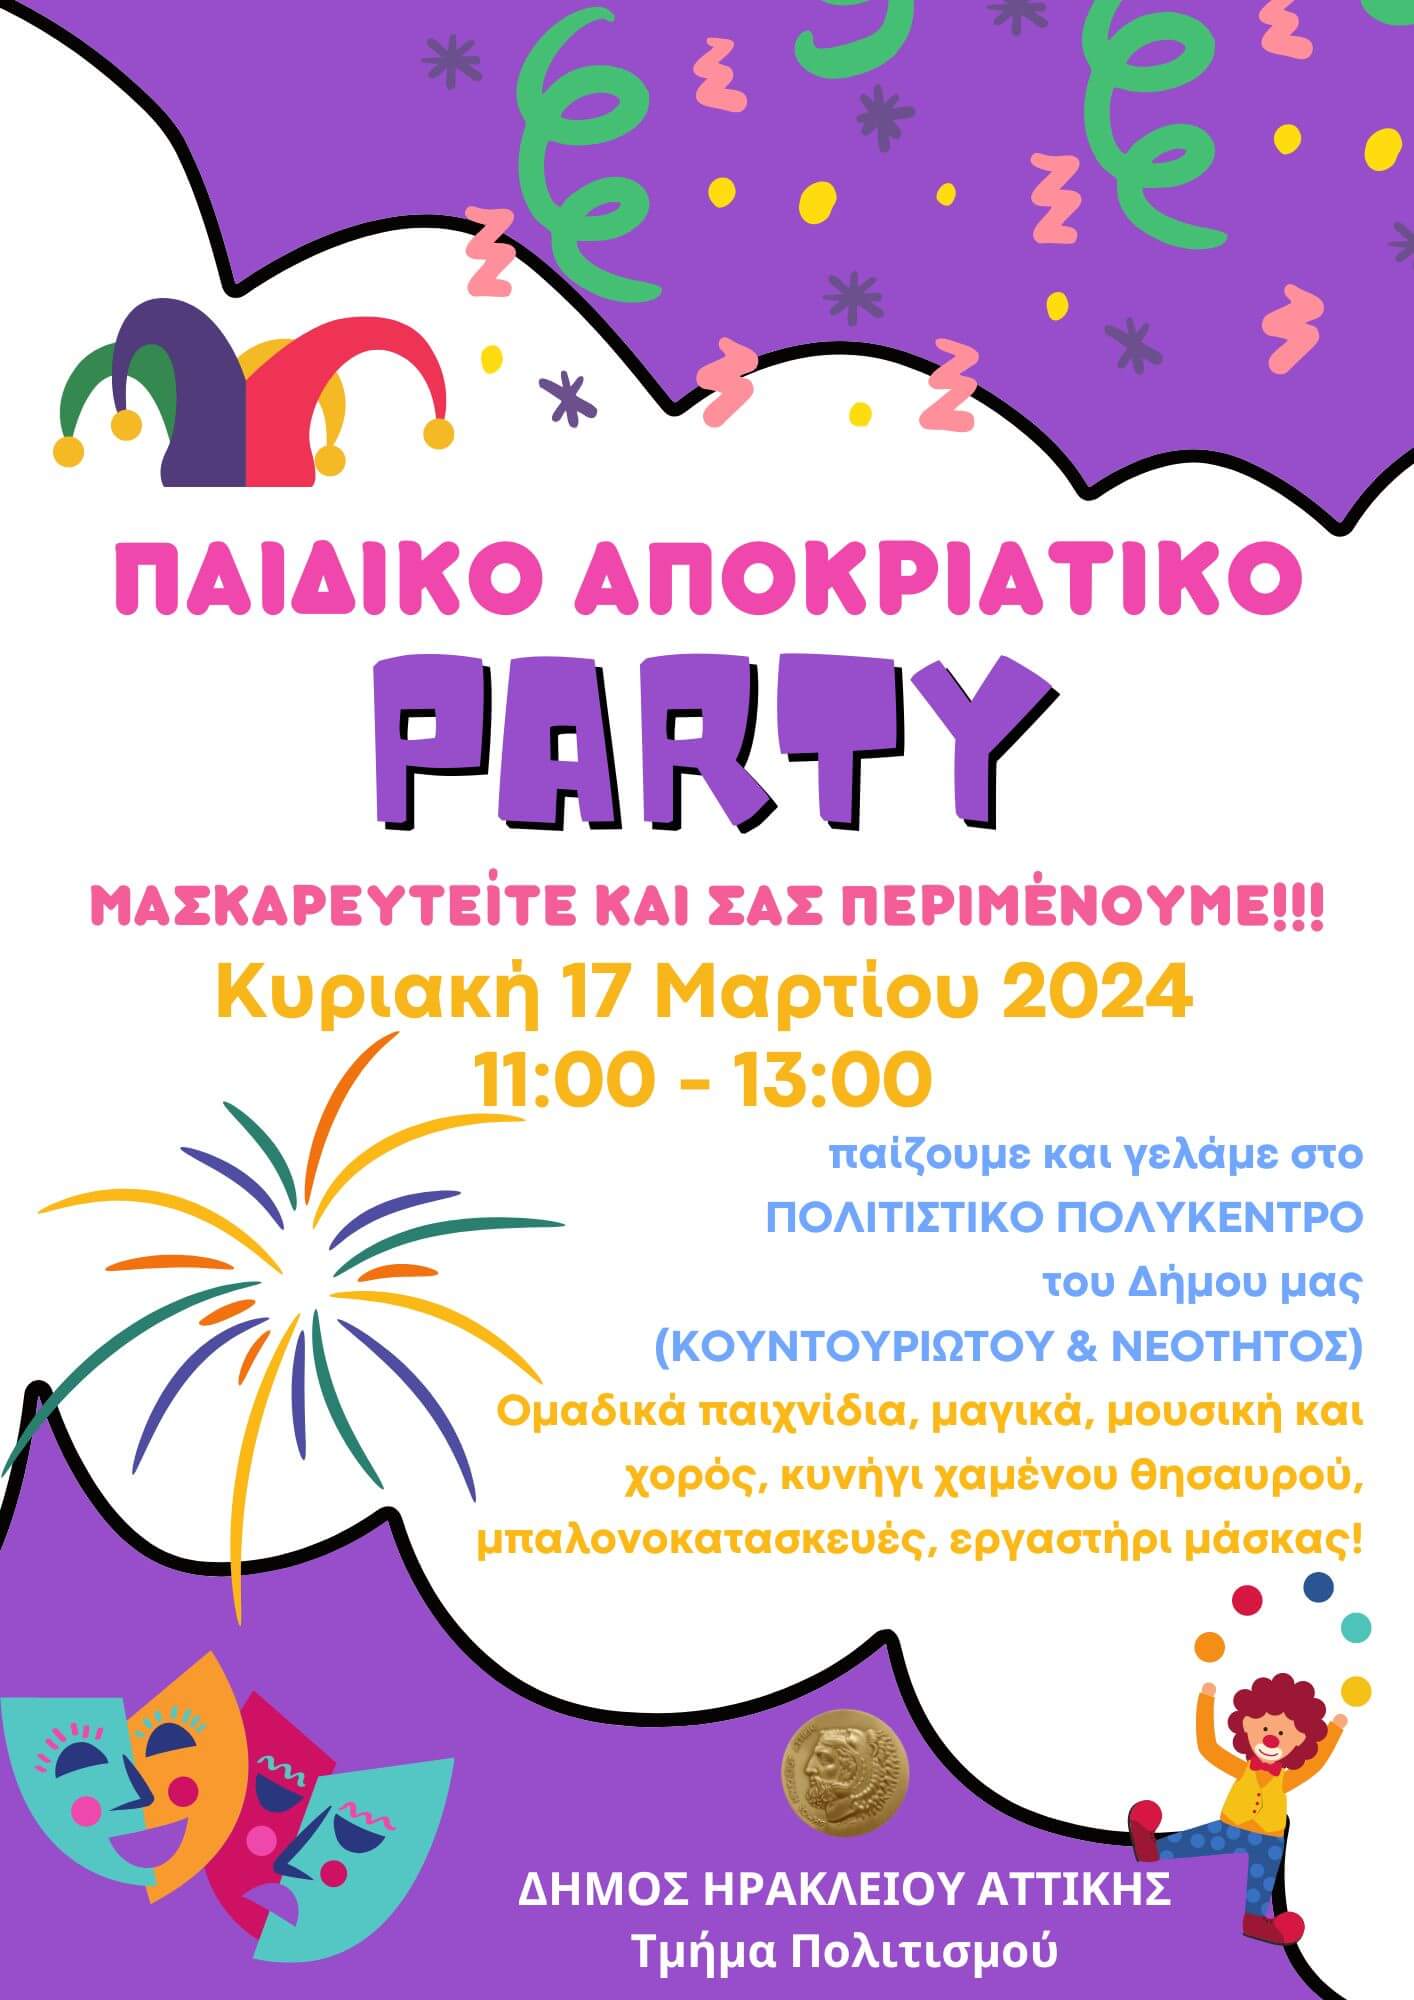 Παιδικό αποκριάτικο πάρτι στον Δήμο Ηρακλείου Αττικής με ελεύθερη είσοδο